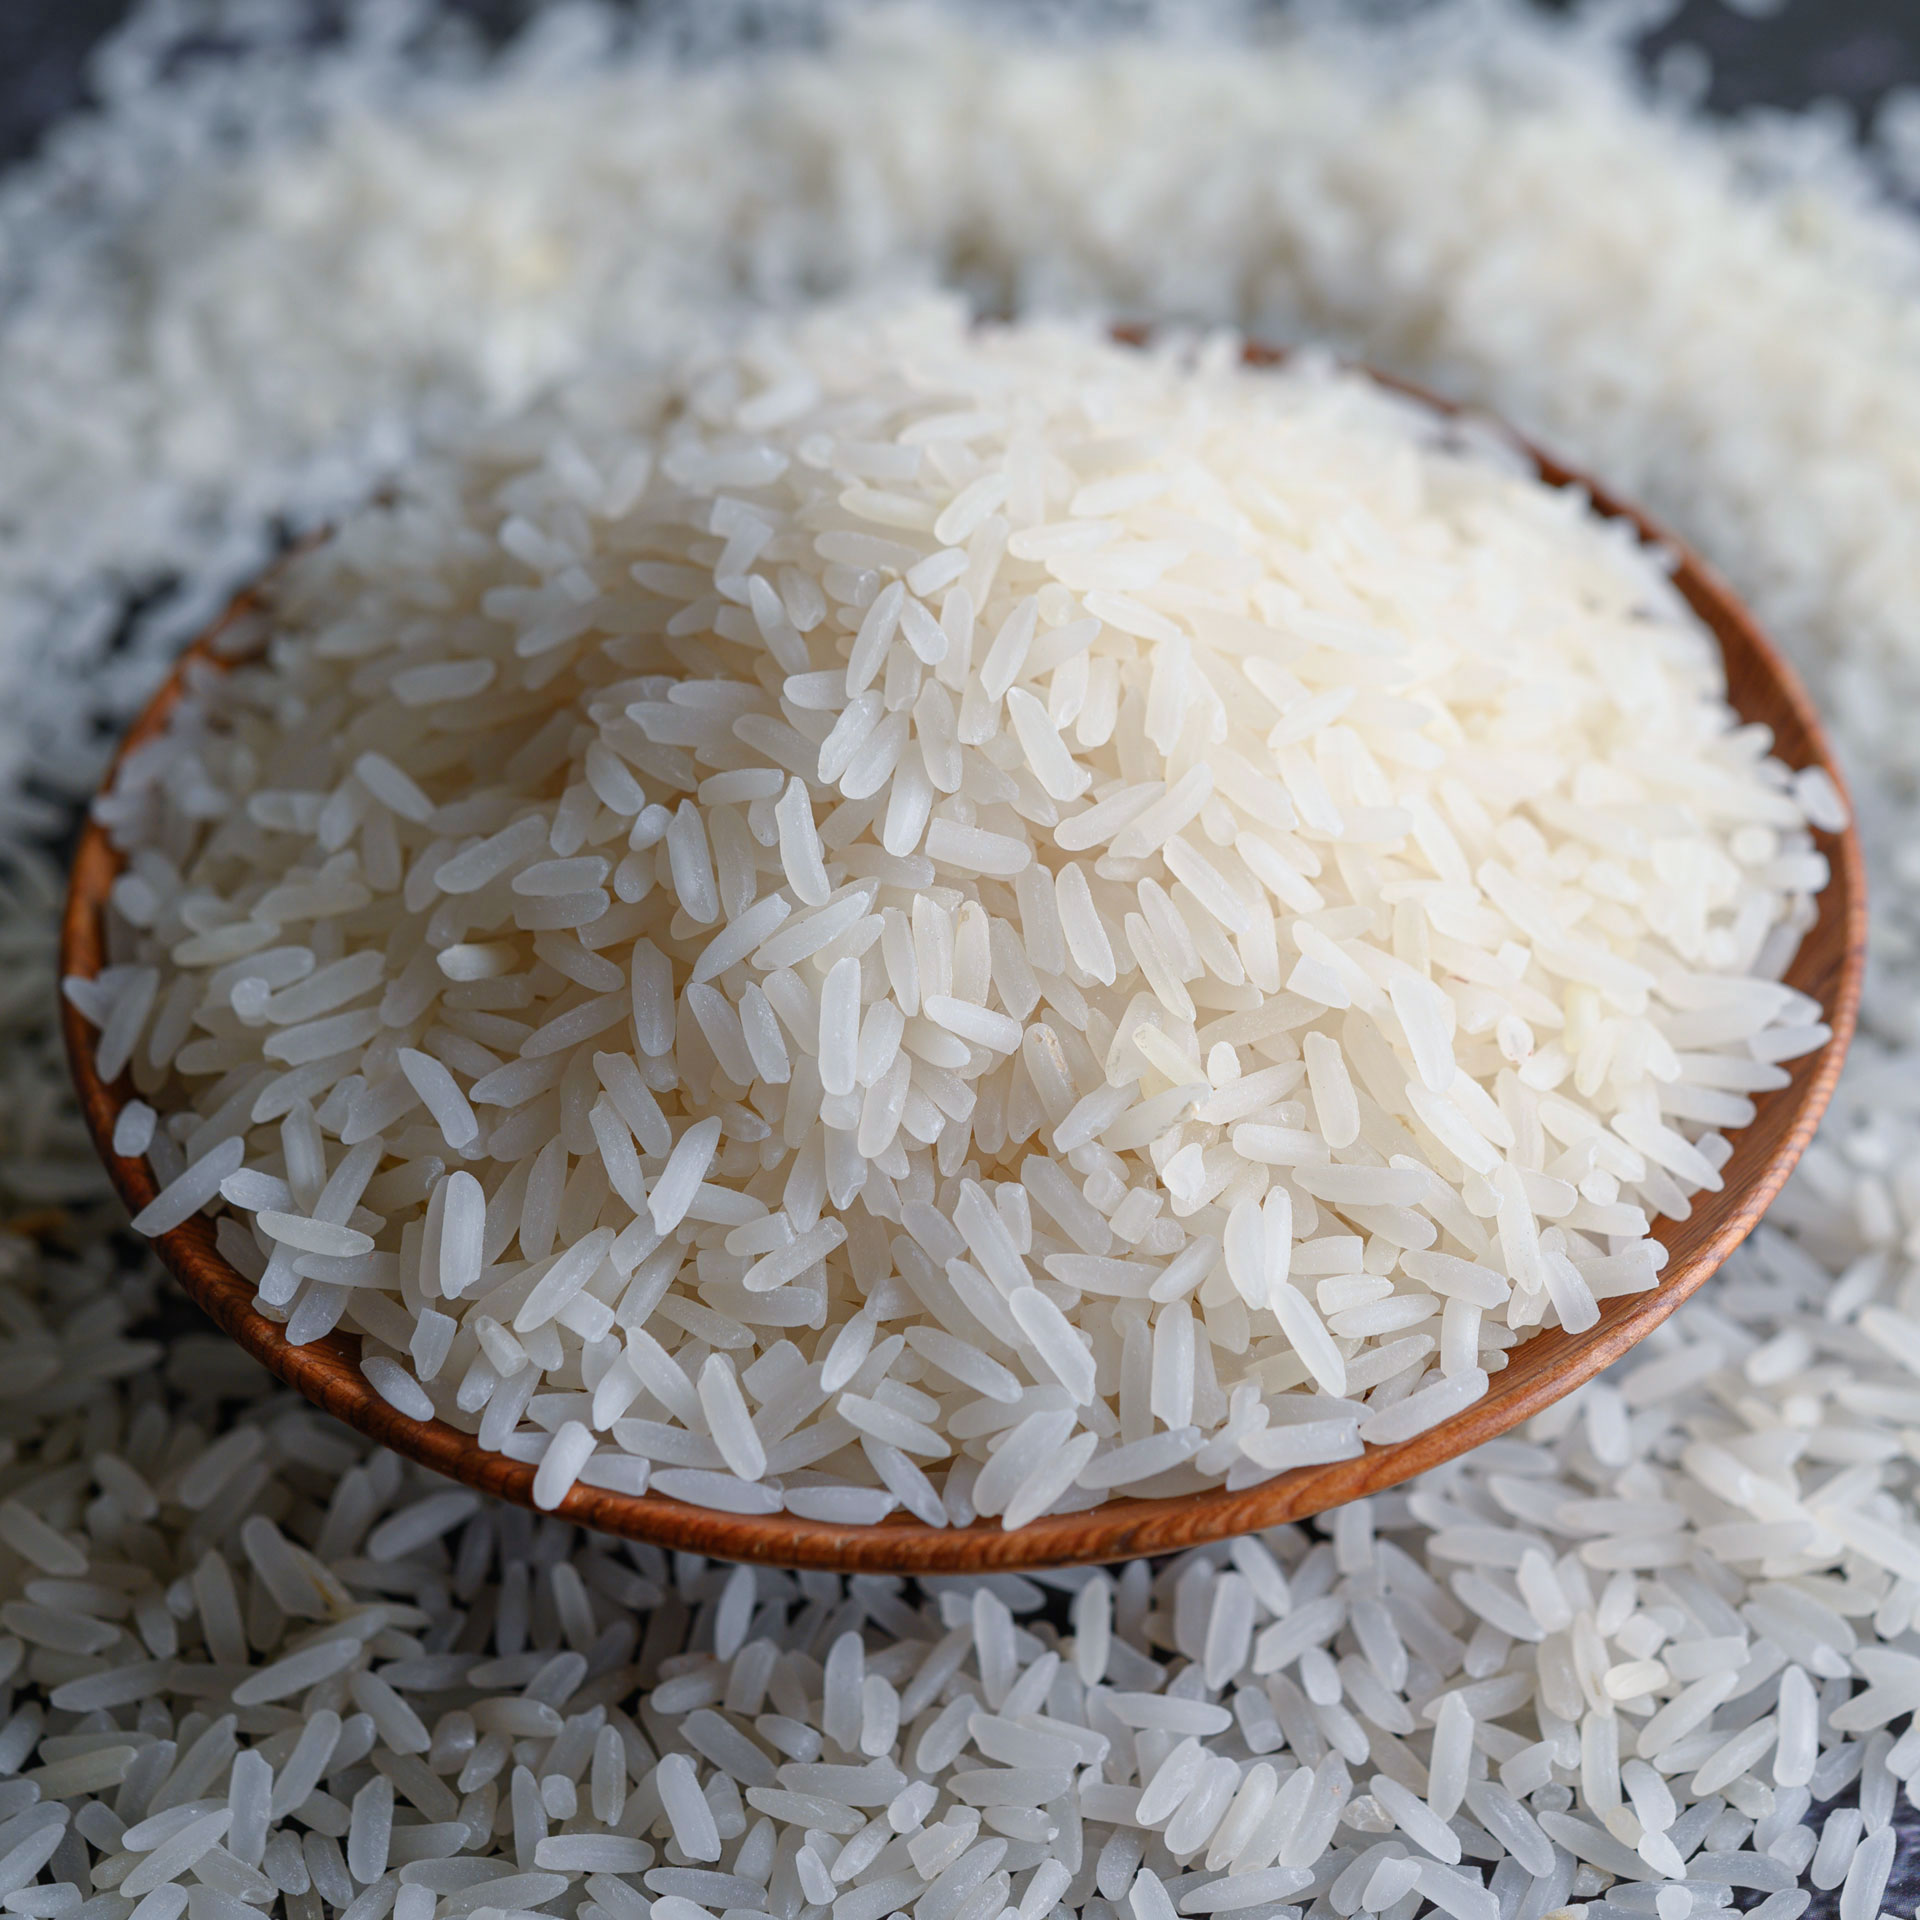 milled-rice-bowl-pakistan-rice